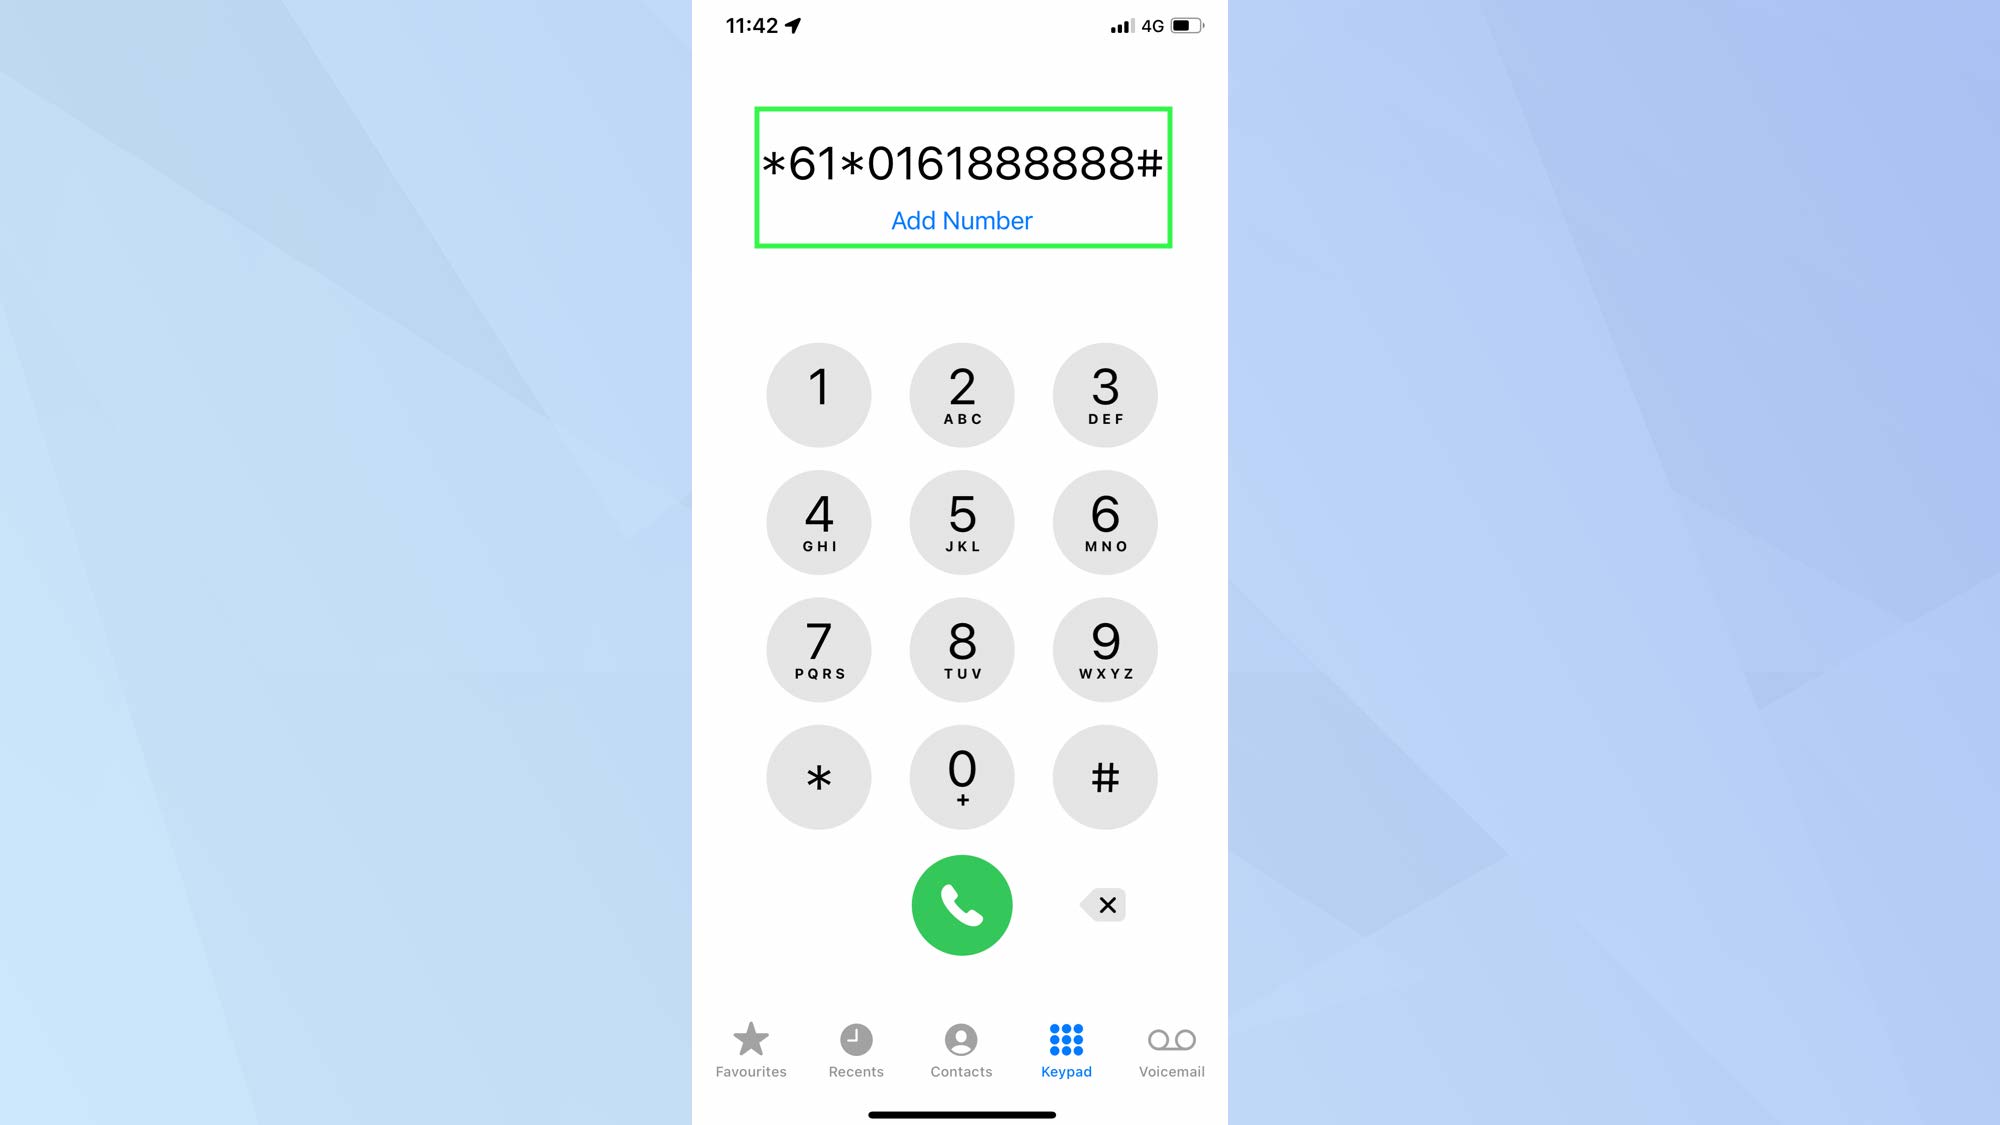 Снимок экрана с iPhone, показывающий приложение для телефона с кодом для переадресации звонков.